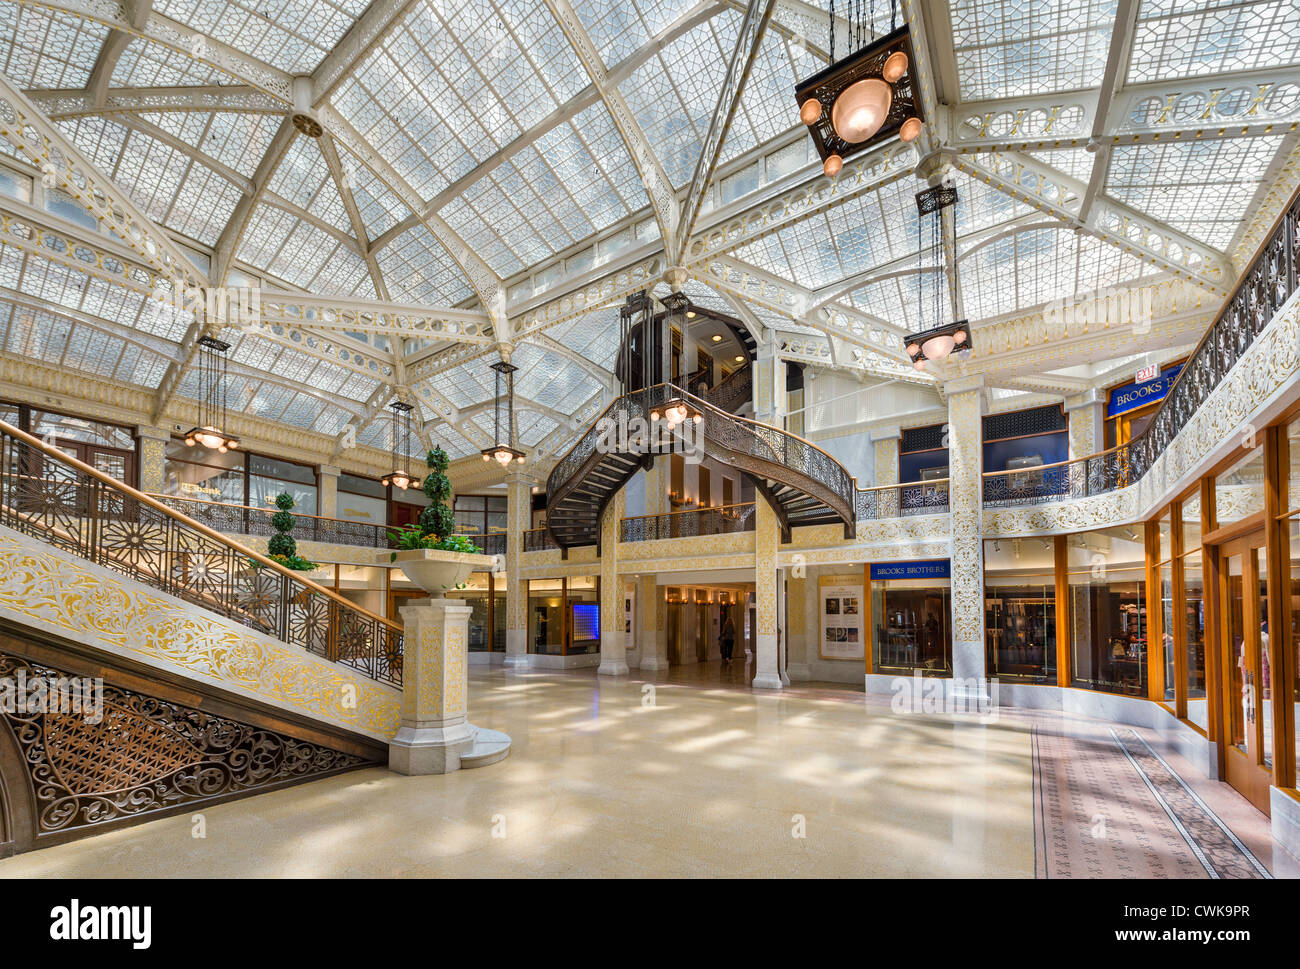 Frank Lloyd Wright conçu lobby de l'hôtel The Rookery building sur La Salle Street dans le quartier de la boucle, Chicago, Illinois, États-Unis Banque D'Images